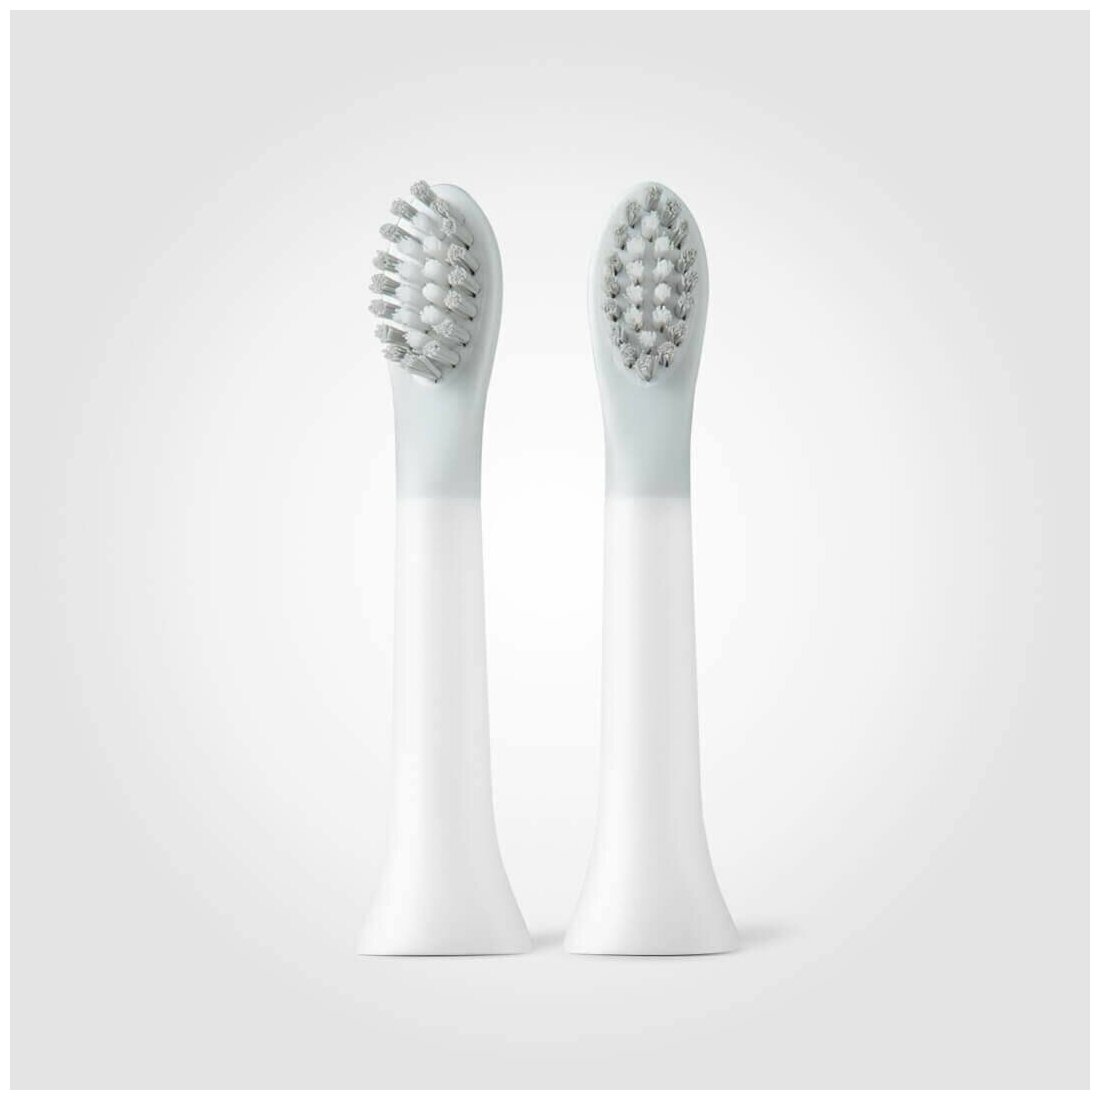 2 ШТ Сменная головка щетки подходит для SOOCAS Pinjing EX3 Электрическая зубная щетка Индивидуальная упаковка, Белые - фотография № 13